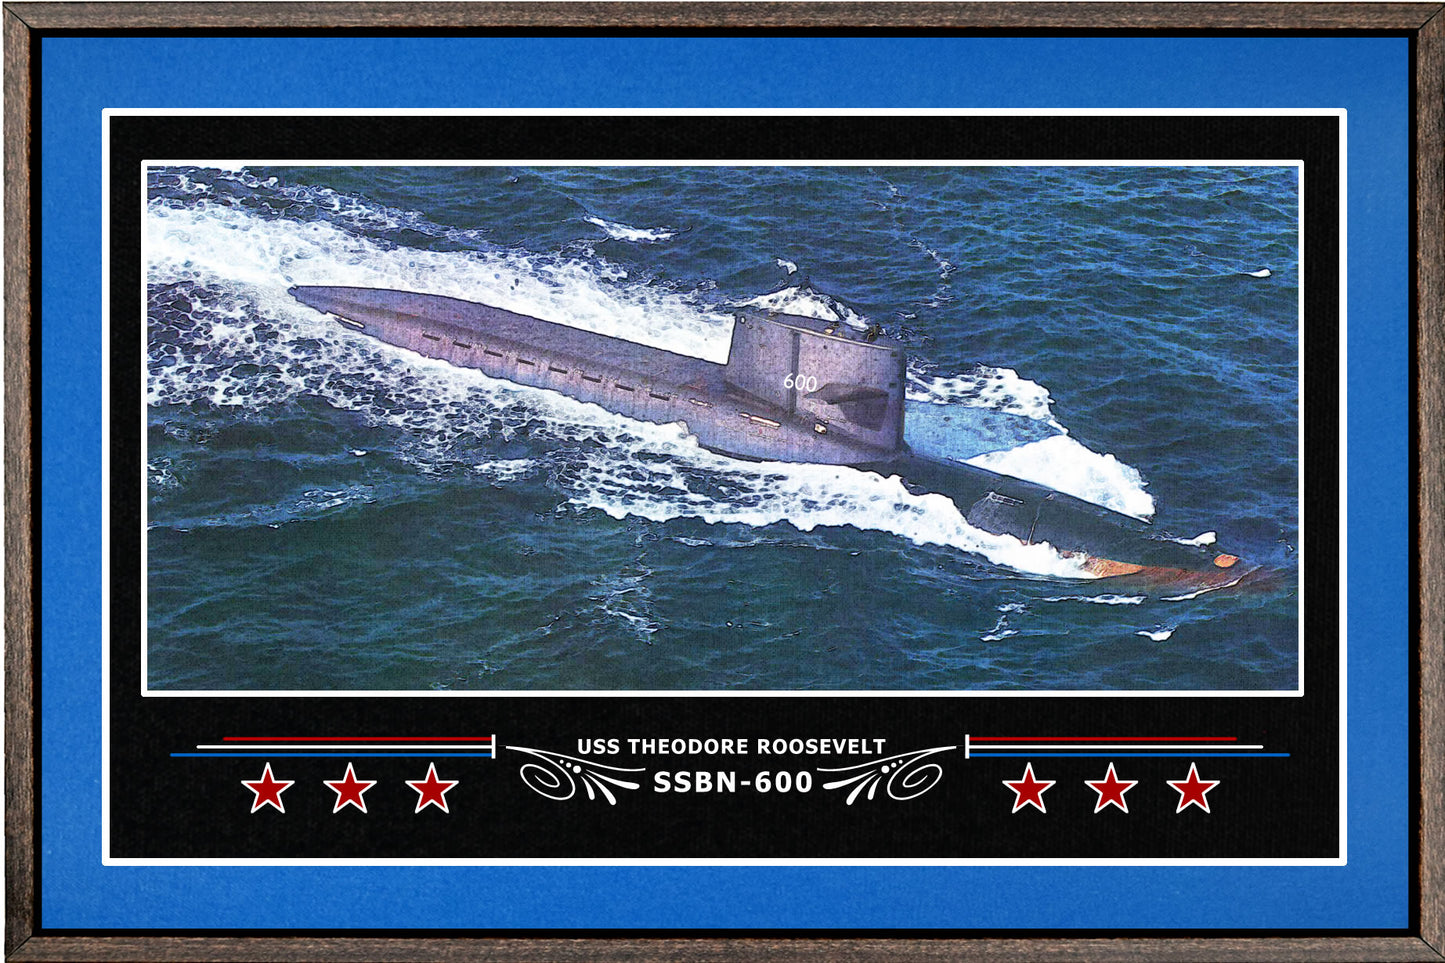 USS THEODORE ROOSEVELT SSBN 600 BOX FRAMED CANVAS ART BLUE